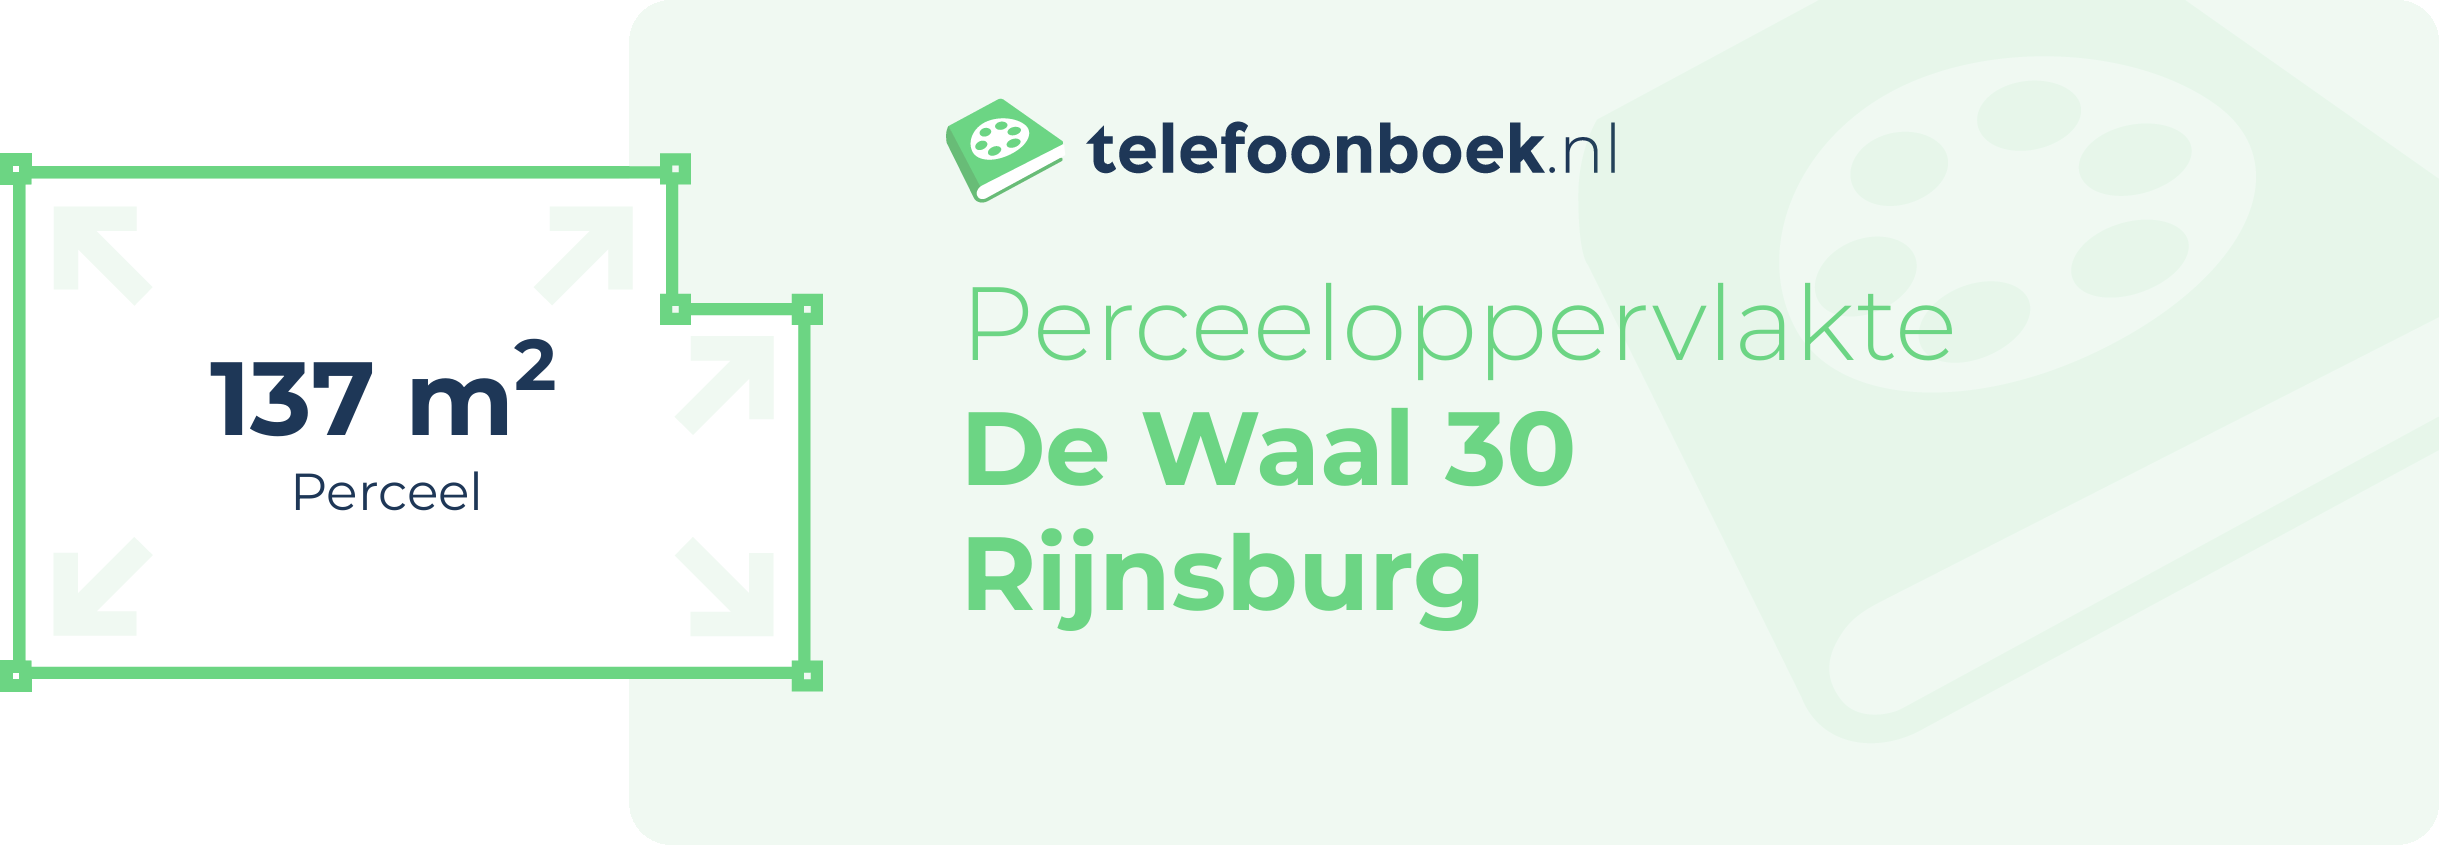 Perceeloppervlakte De Waal 30 Rijnsburg